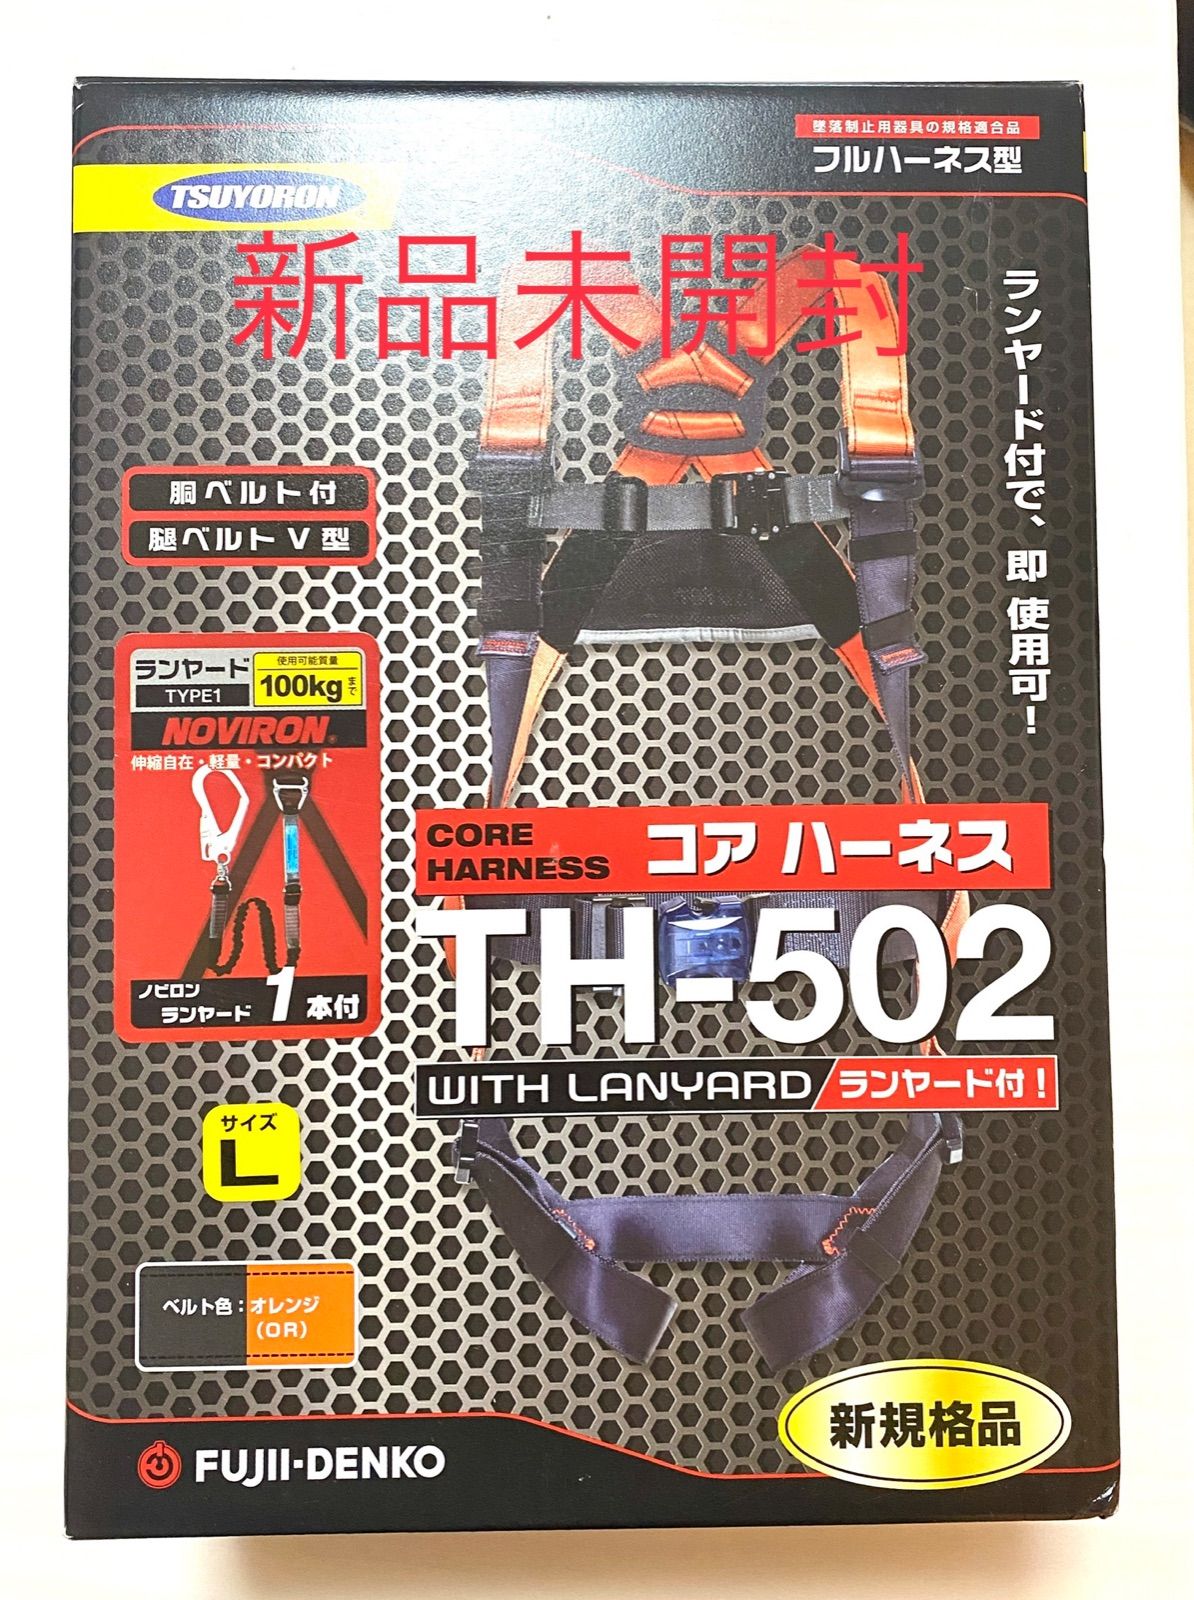 倉庫 藤井電工 TH-502 新規格フルハーネスMサイズ ツインランヤード付き